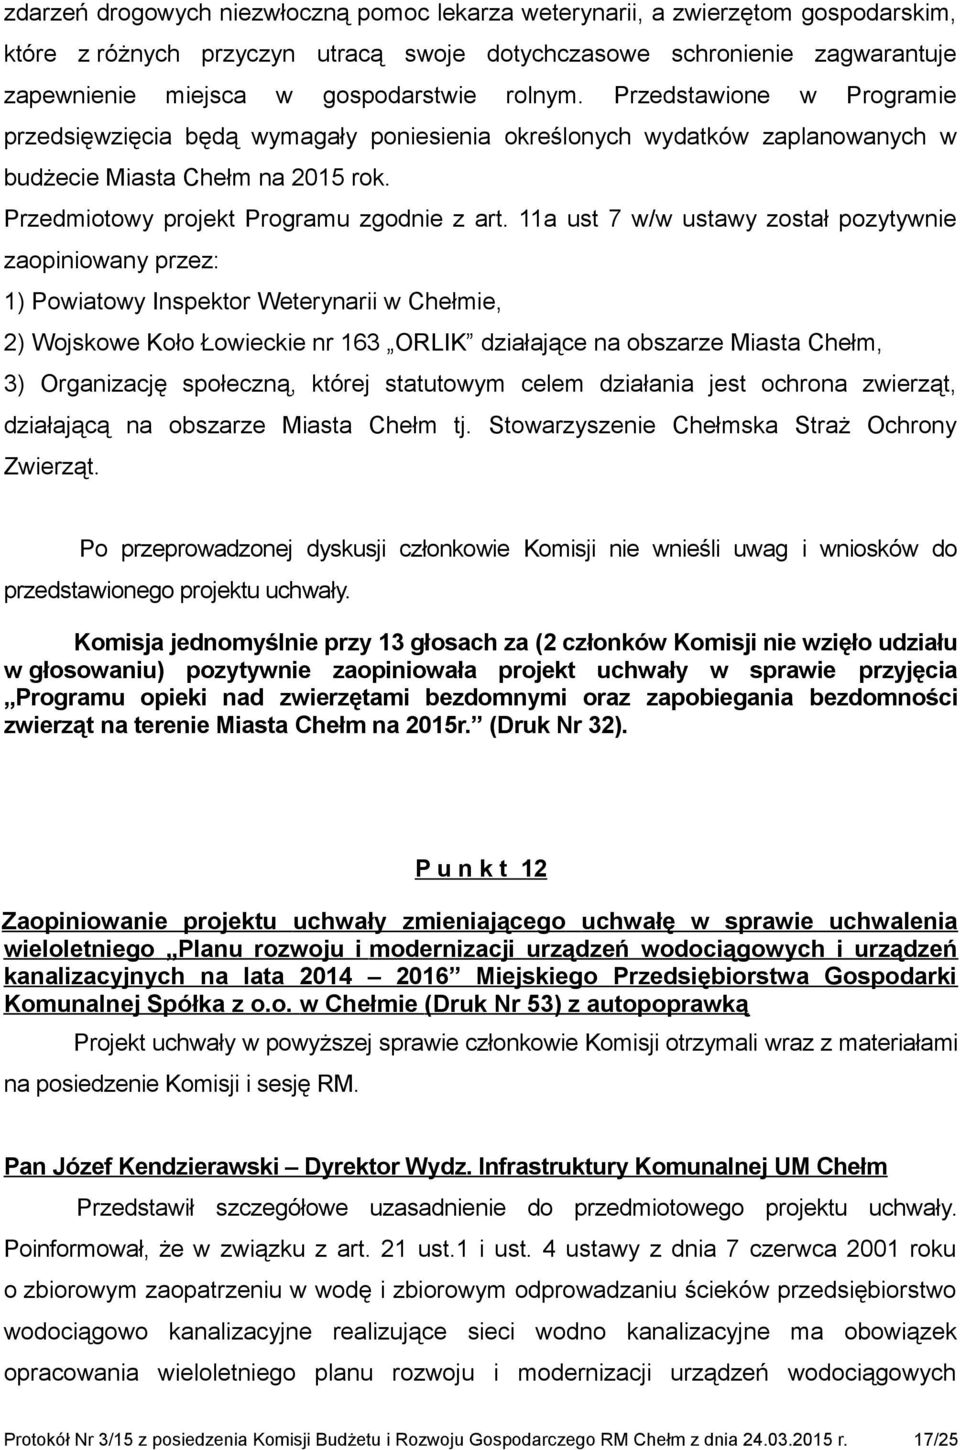 11a ust 7 w/w ustawy został pozytywnie zaopiniowany przez: 1) Powiatowy Inspektor Weterynarii w Chełmie, 2) Wojskowe Koło Łowieckie nr 163 ORLIK działające na obszarze Miasta Chełm, 3) Organizację